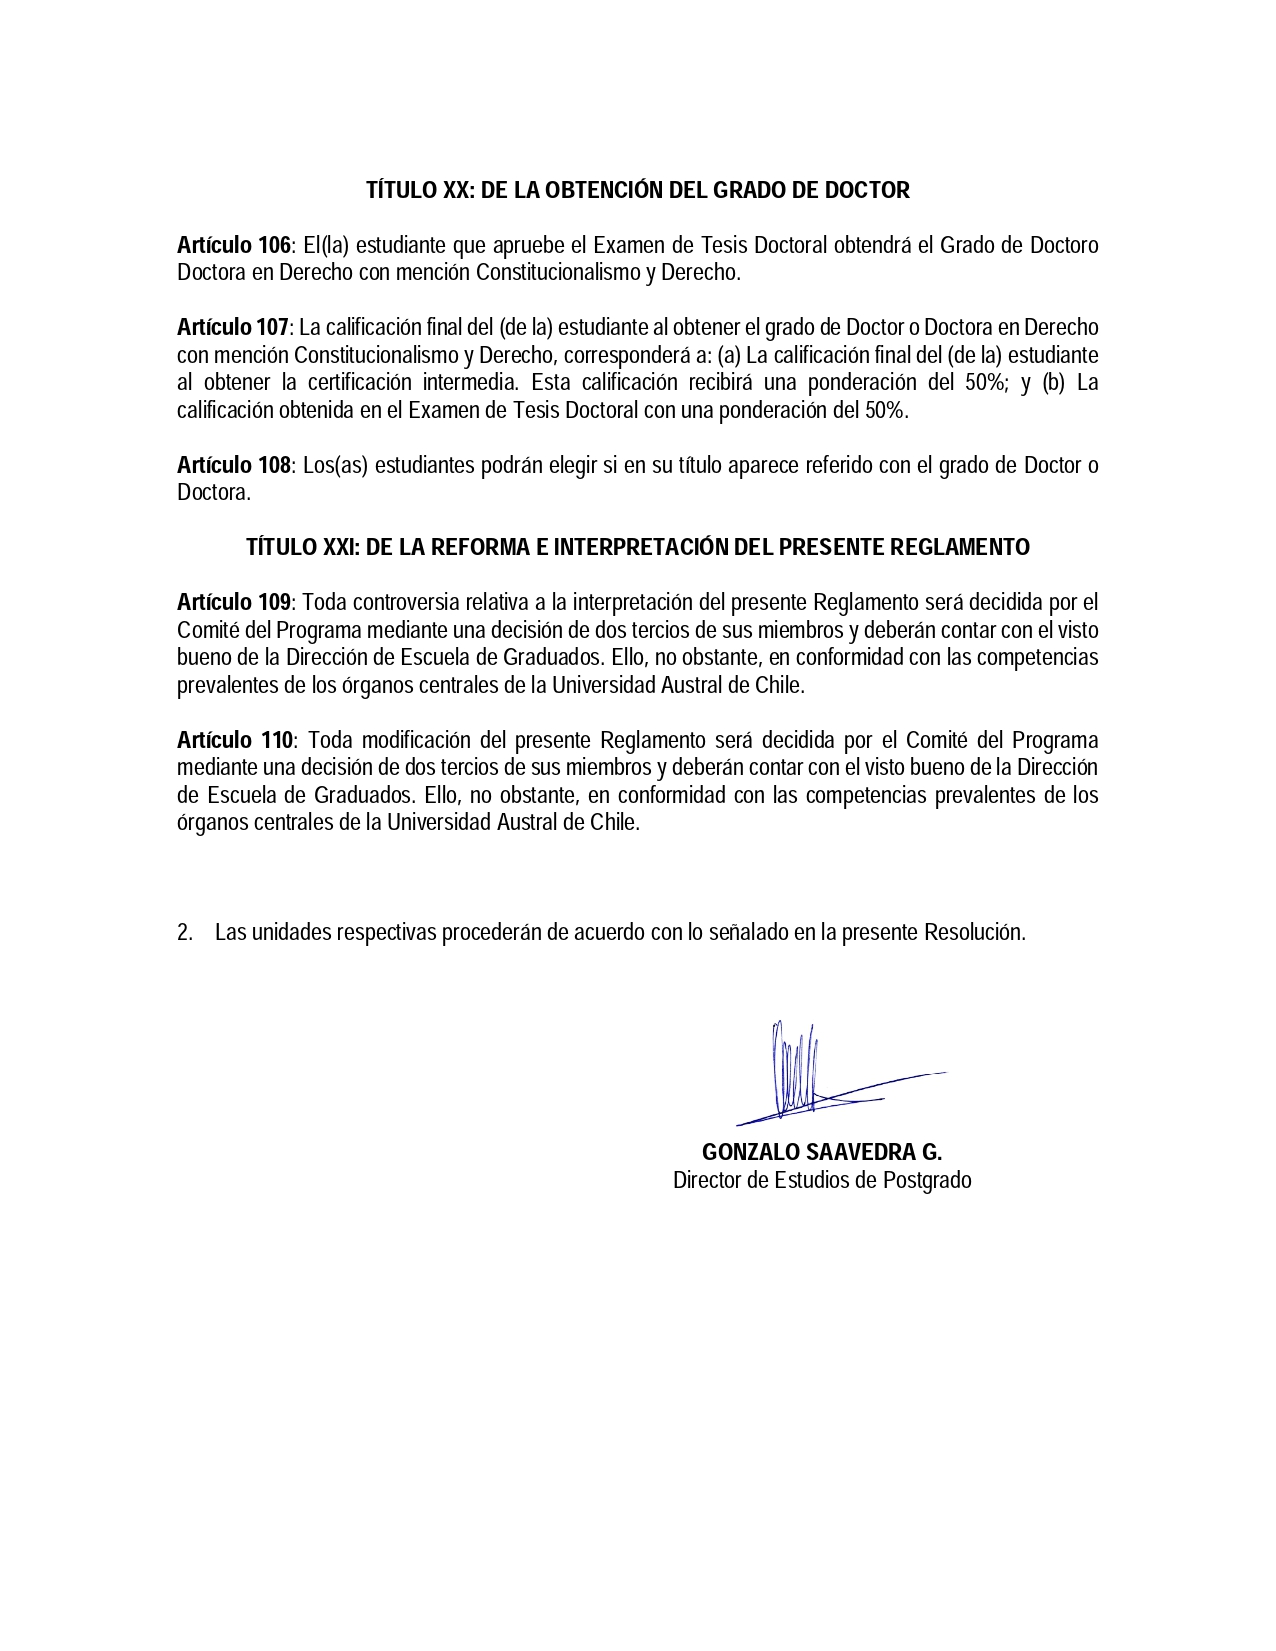 RESOL-FD-006-2021-Normativa-Interna-Doctorado-en-Derechopage-0018